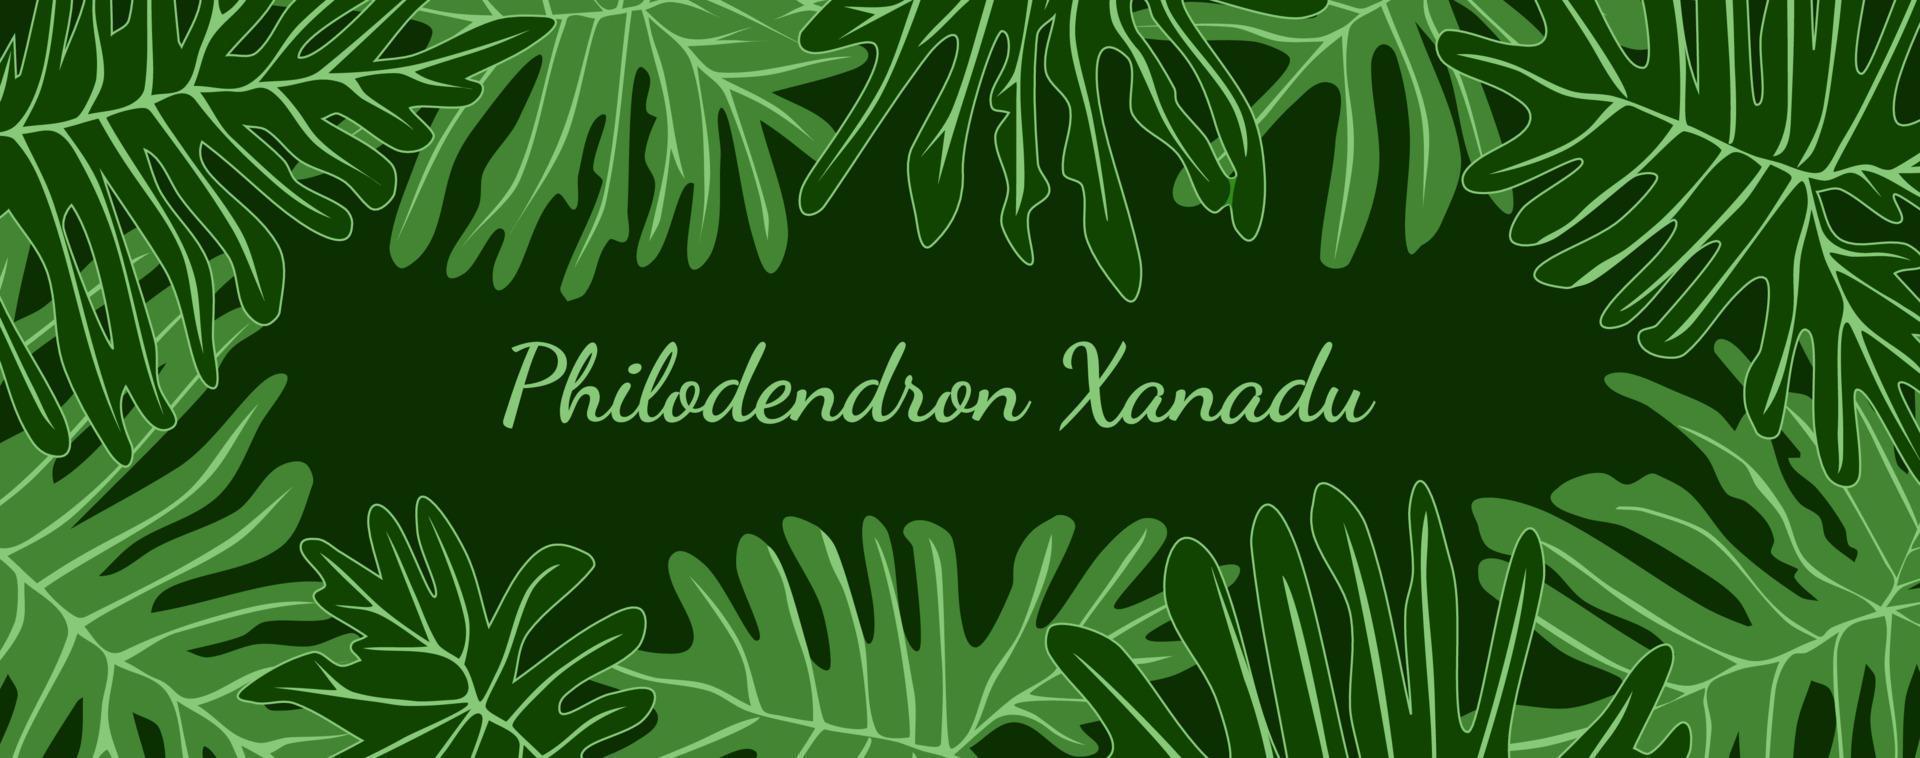 philodendron xanadu tropische blätter rahmen mit platzieren sie ihren text. grünes Laub Banner Hintergrund Vektor Illustration.